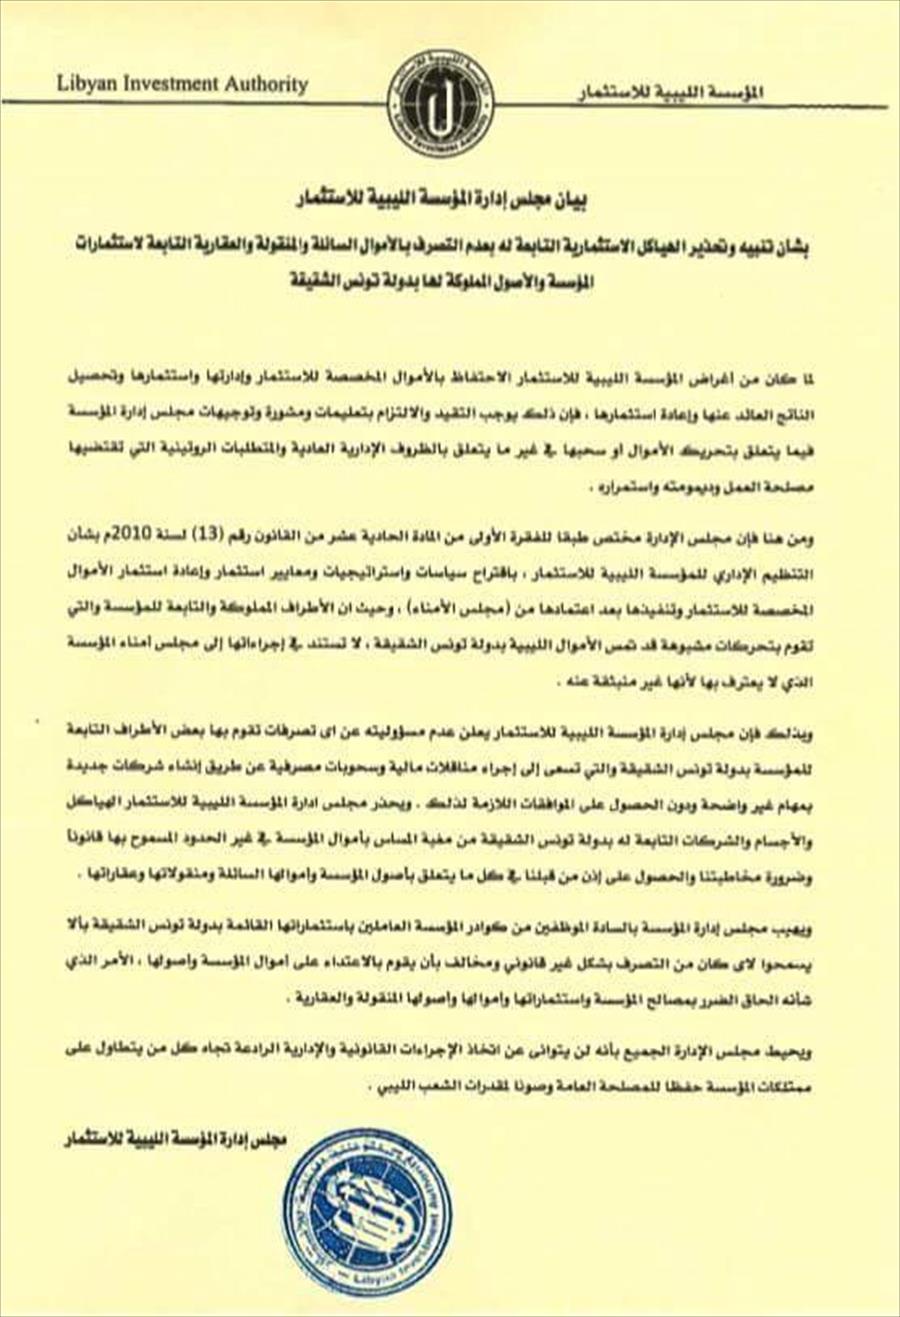 «الليبية للاستثمار» تحذر من التصرف بأموال وممتلكات المؤسسة في تونس